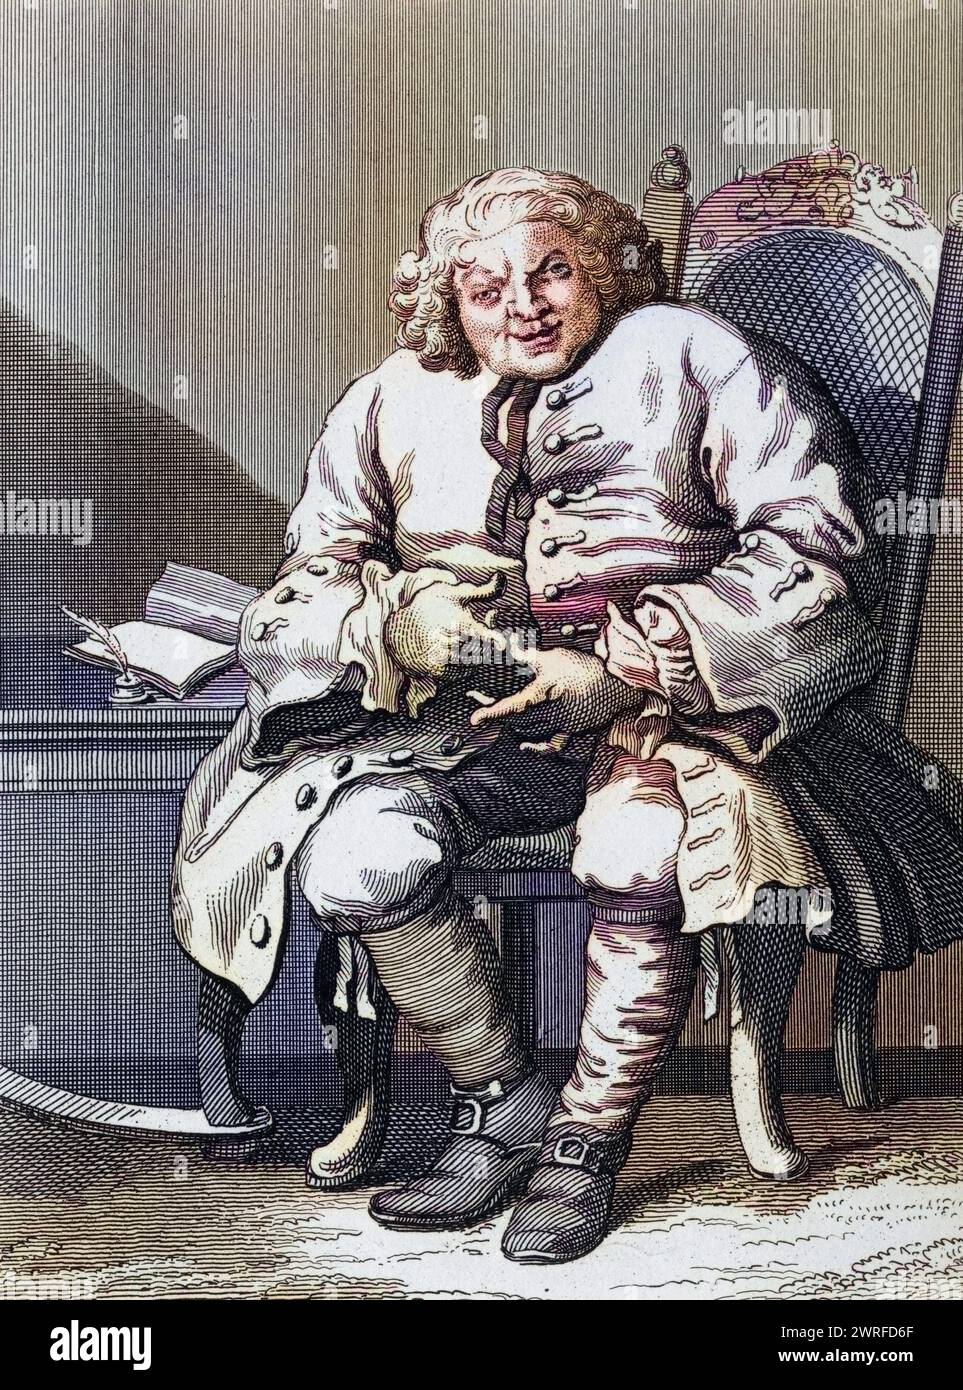 Simon Fraser Lord Lovat 1667 bis 1747 schottischer Jakobitenhäuptling aus dem Original von Hogarth aus den Werken von Hogarth veröffentlicht London 1833 , Historisch, digital restaurierte Reproduktion von einer Vorlage aus dem 19. Jahrhundert, Datum nicht angegeben, Stockfoto